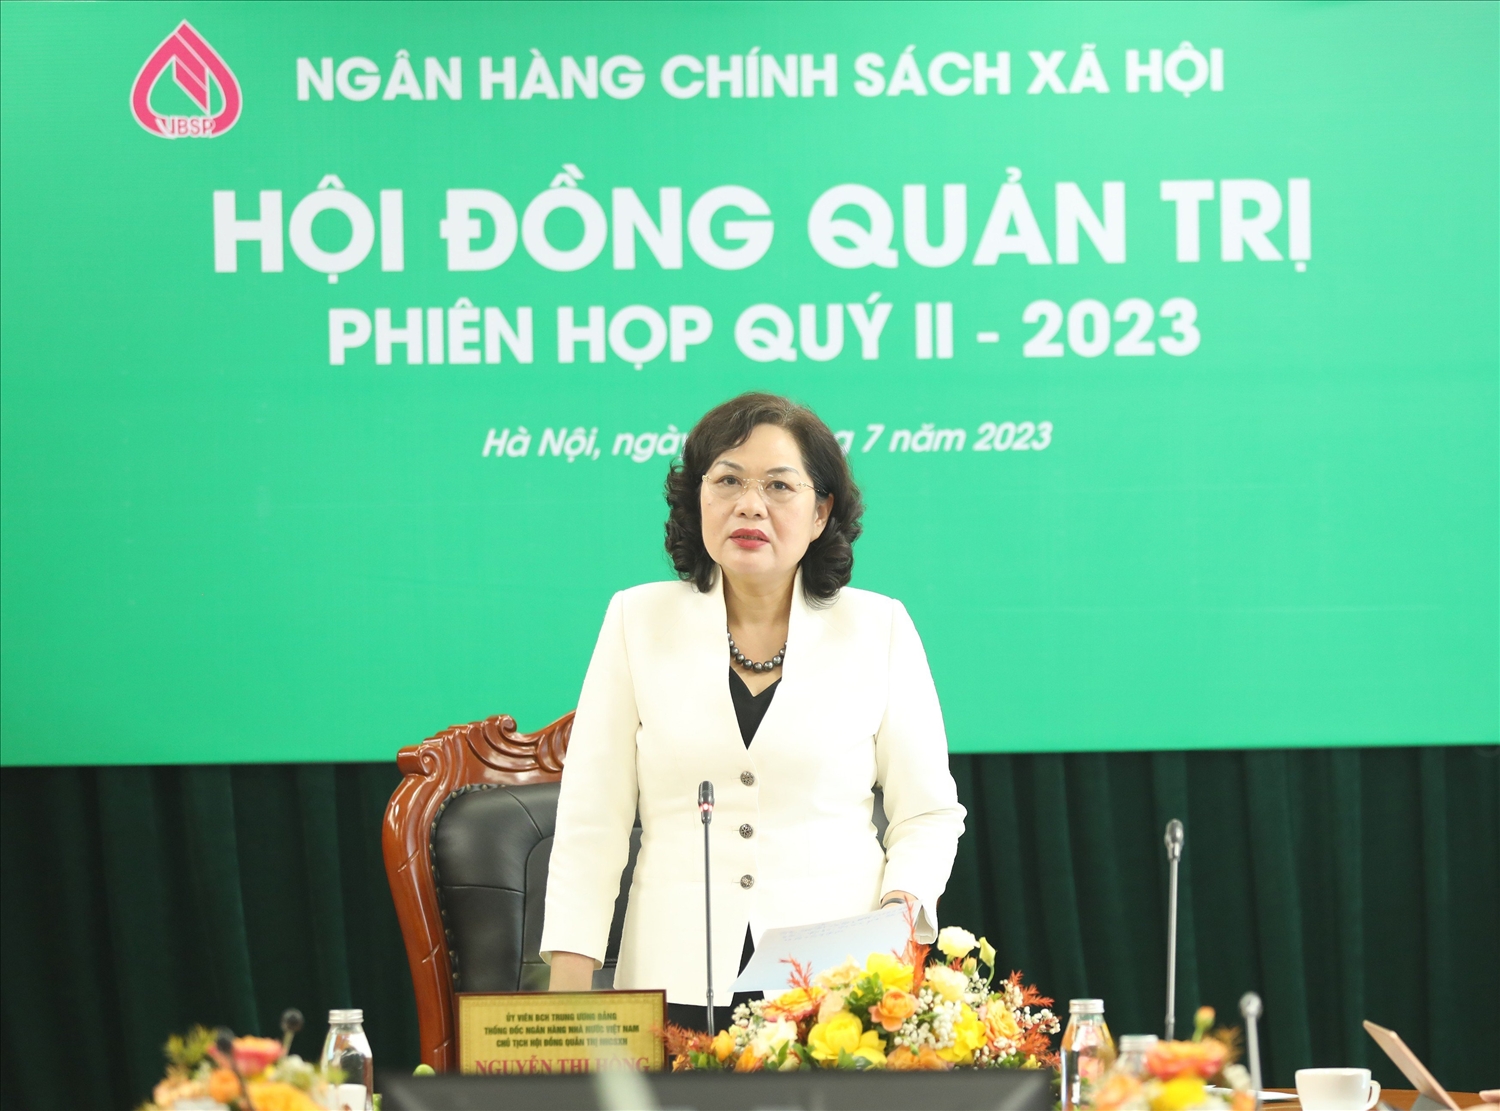 Thống đốc NHNN Việt Nam Nguyễn Thị Hồng - Chủ tịch HĐQT Ngân hàng CSXH phát biểu chủ trì Phiên họp